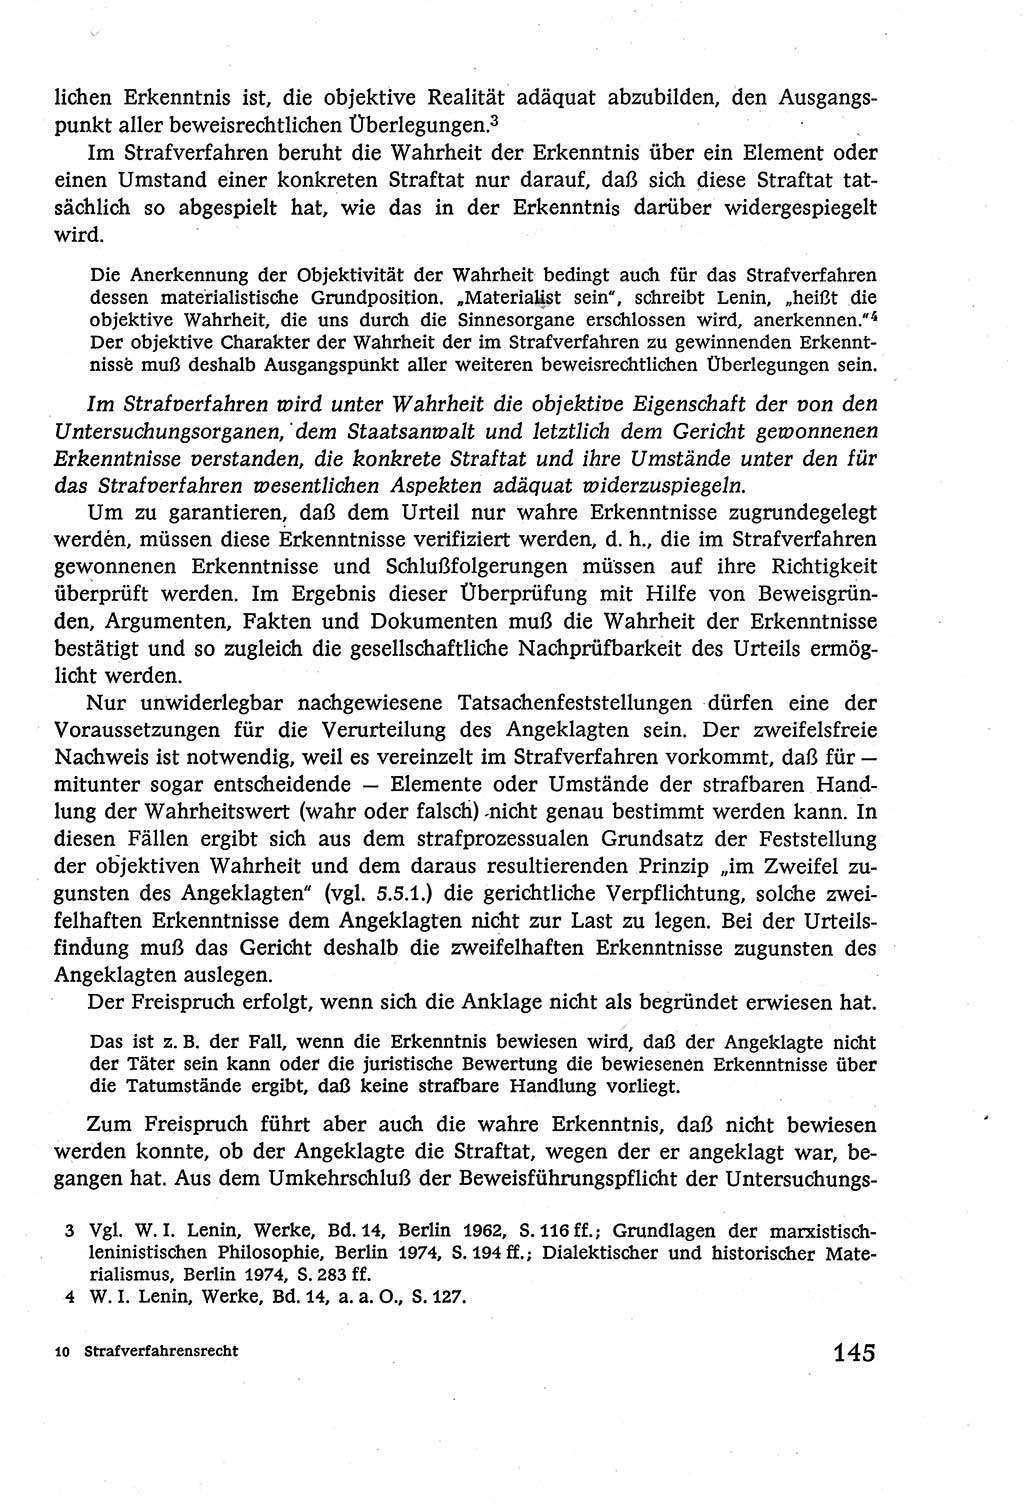 Strafverfahrensrecht [Deutsche Demokratische Republik (DDR)], Lehrbuch 1977, Seite 145 (Strafverf.-R. DDR Lb. 1977, S. 145)